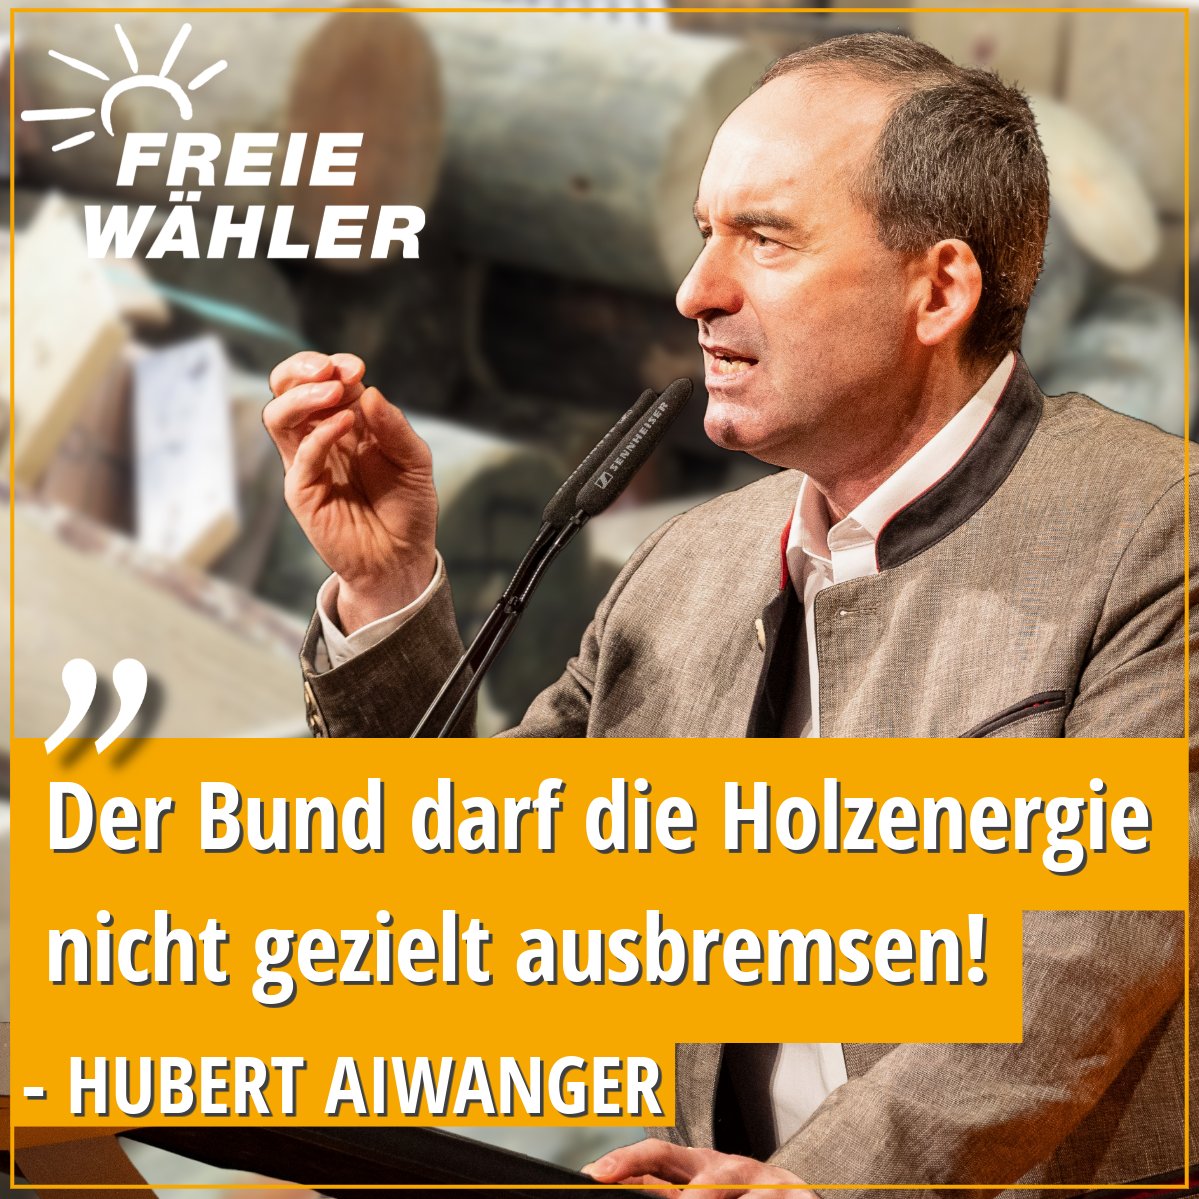 🪵🤝 🗣️ @HubertAiwanger, Bundesvorsitzender #FREIEWÄHLER, sagt: 'Holzenergie ist ein unverzichtbarer Baustein für die Energiewende und Wärmeversorgung, und darf nicht ideologisch eingeschränkt werden.' #AnpackenFürDeutschland